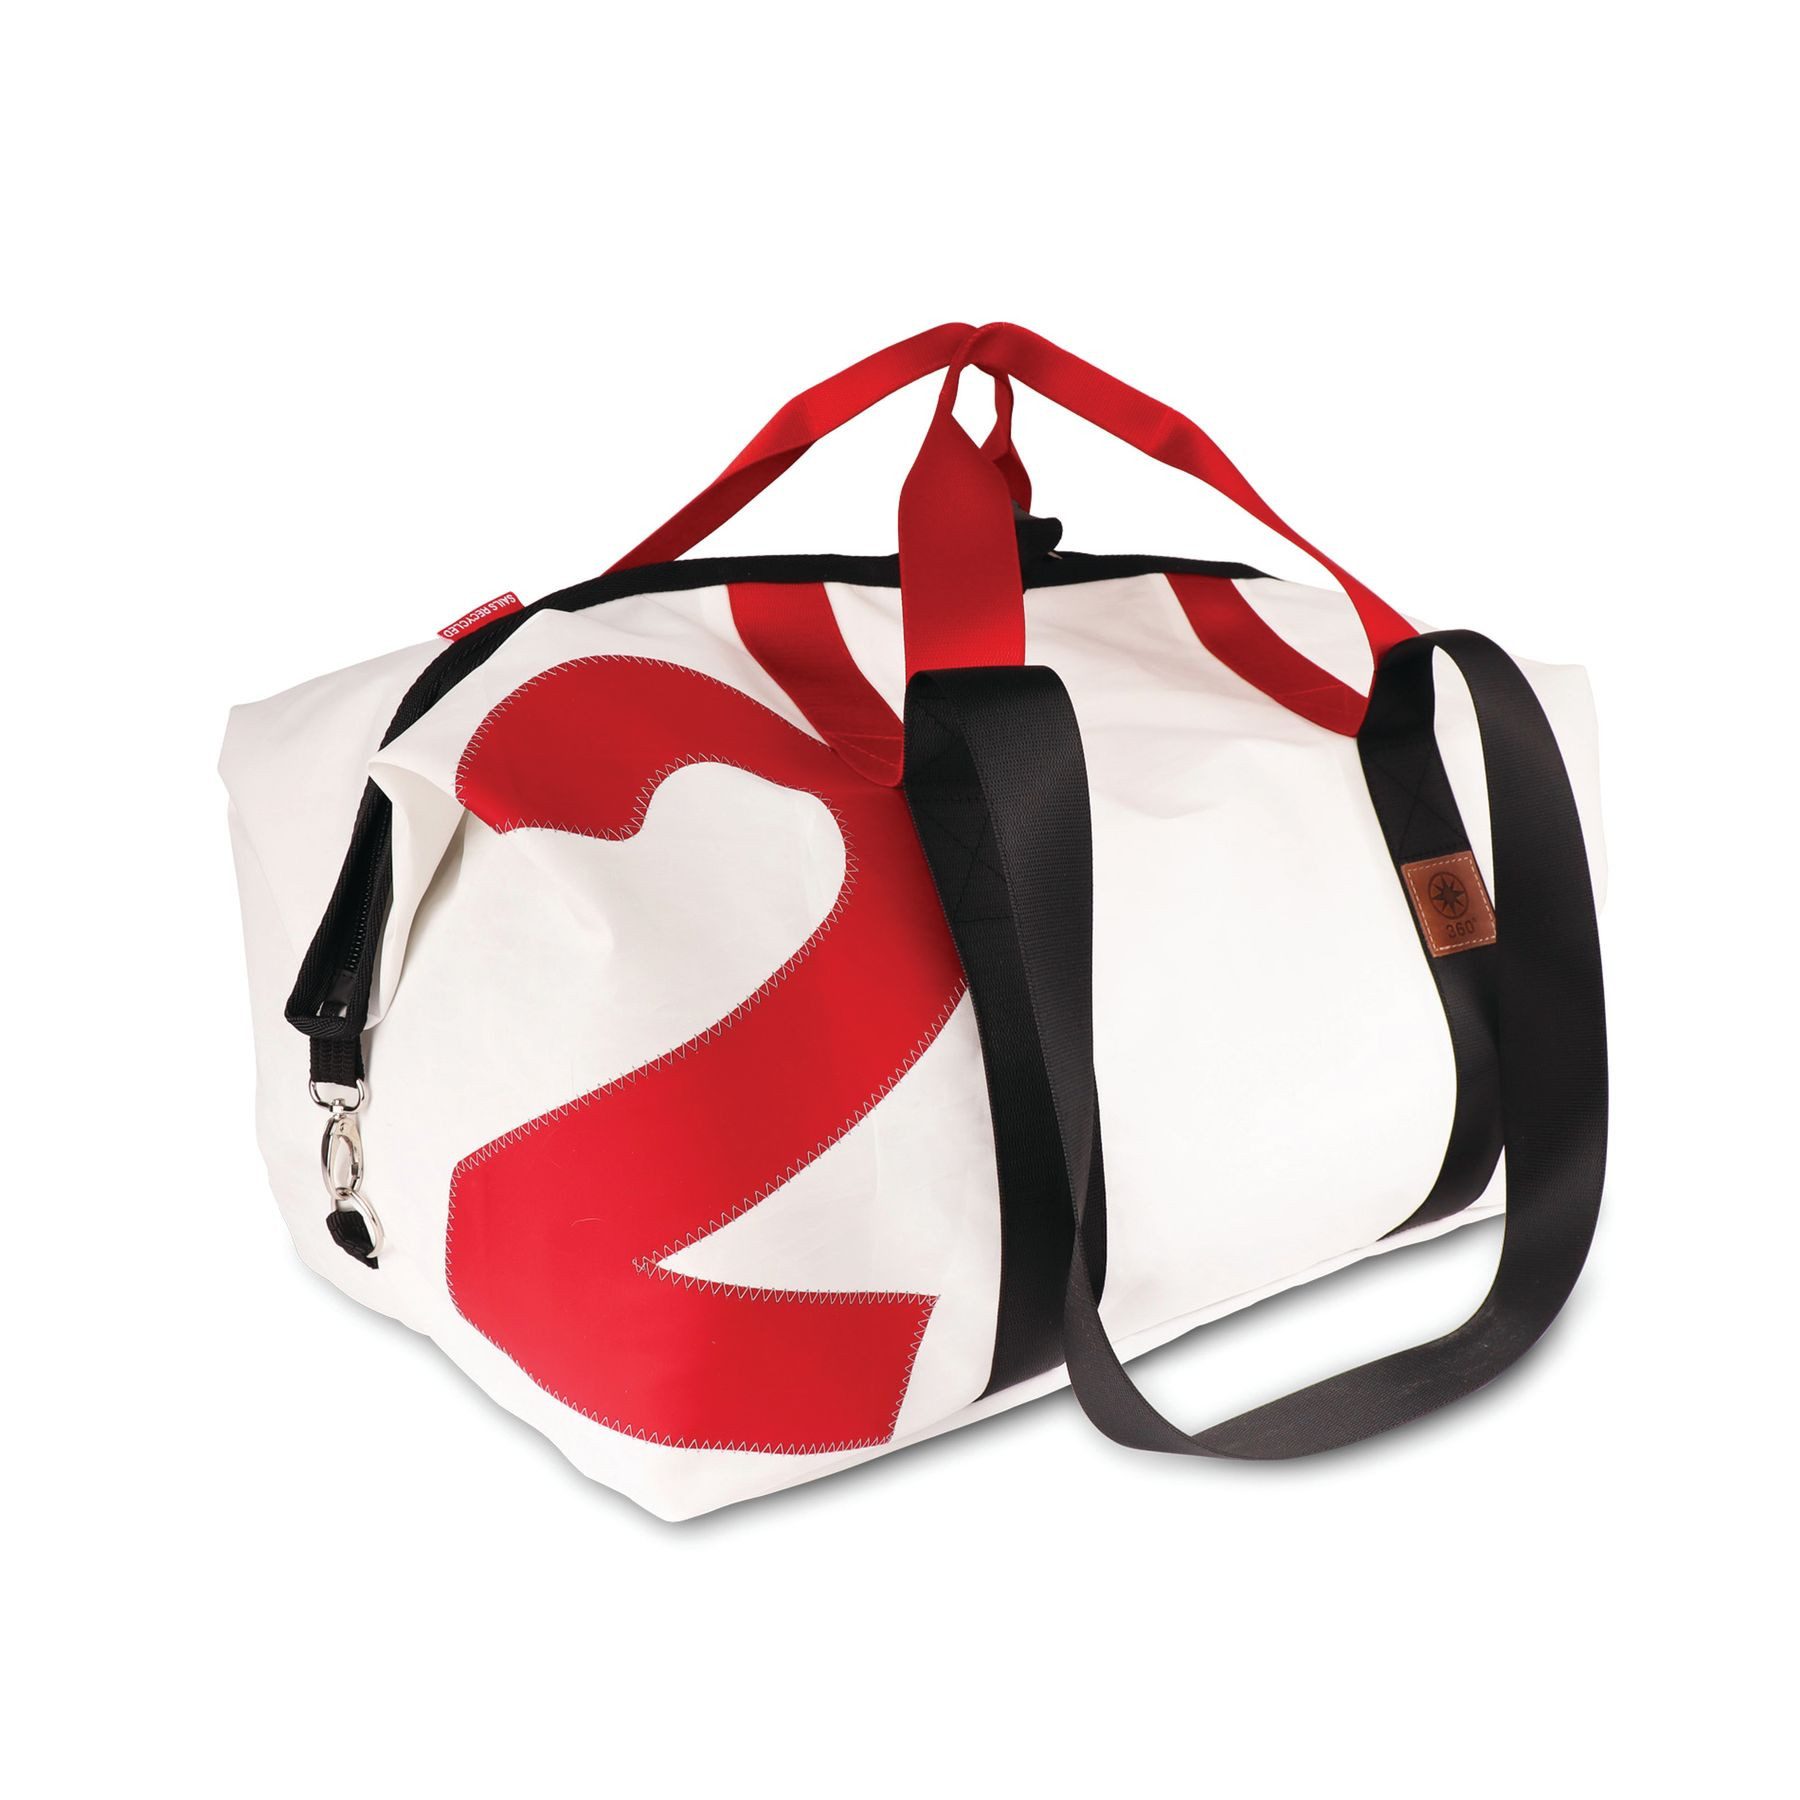 360Grad Reisetasche Kutter XL Segeltuch recycled Reisetasche weiß Zahl rot